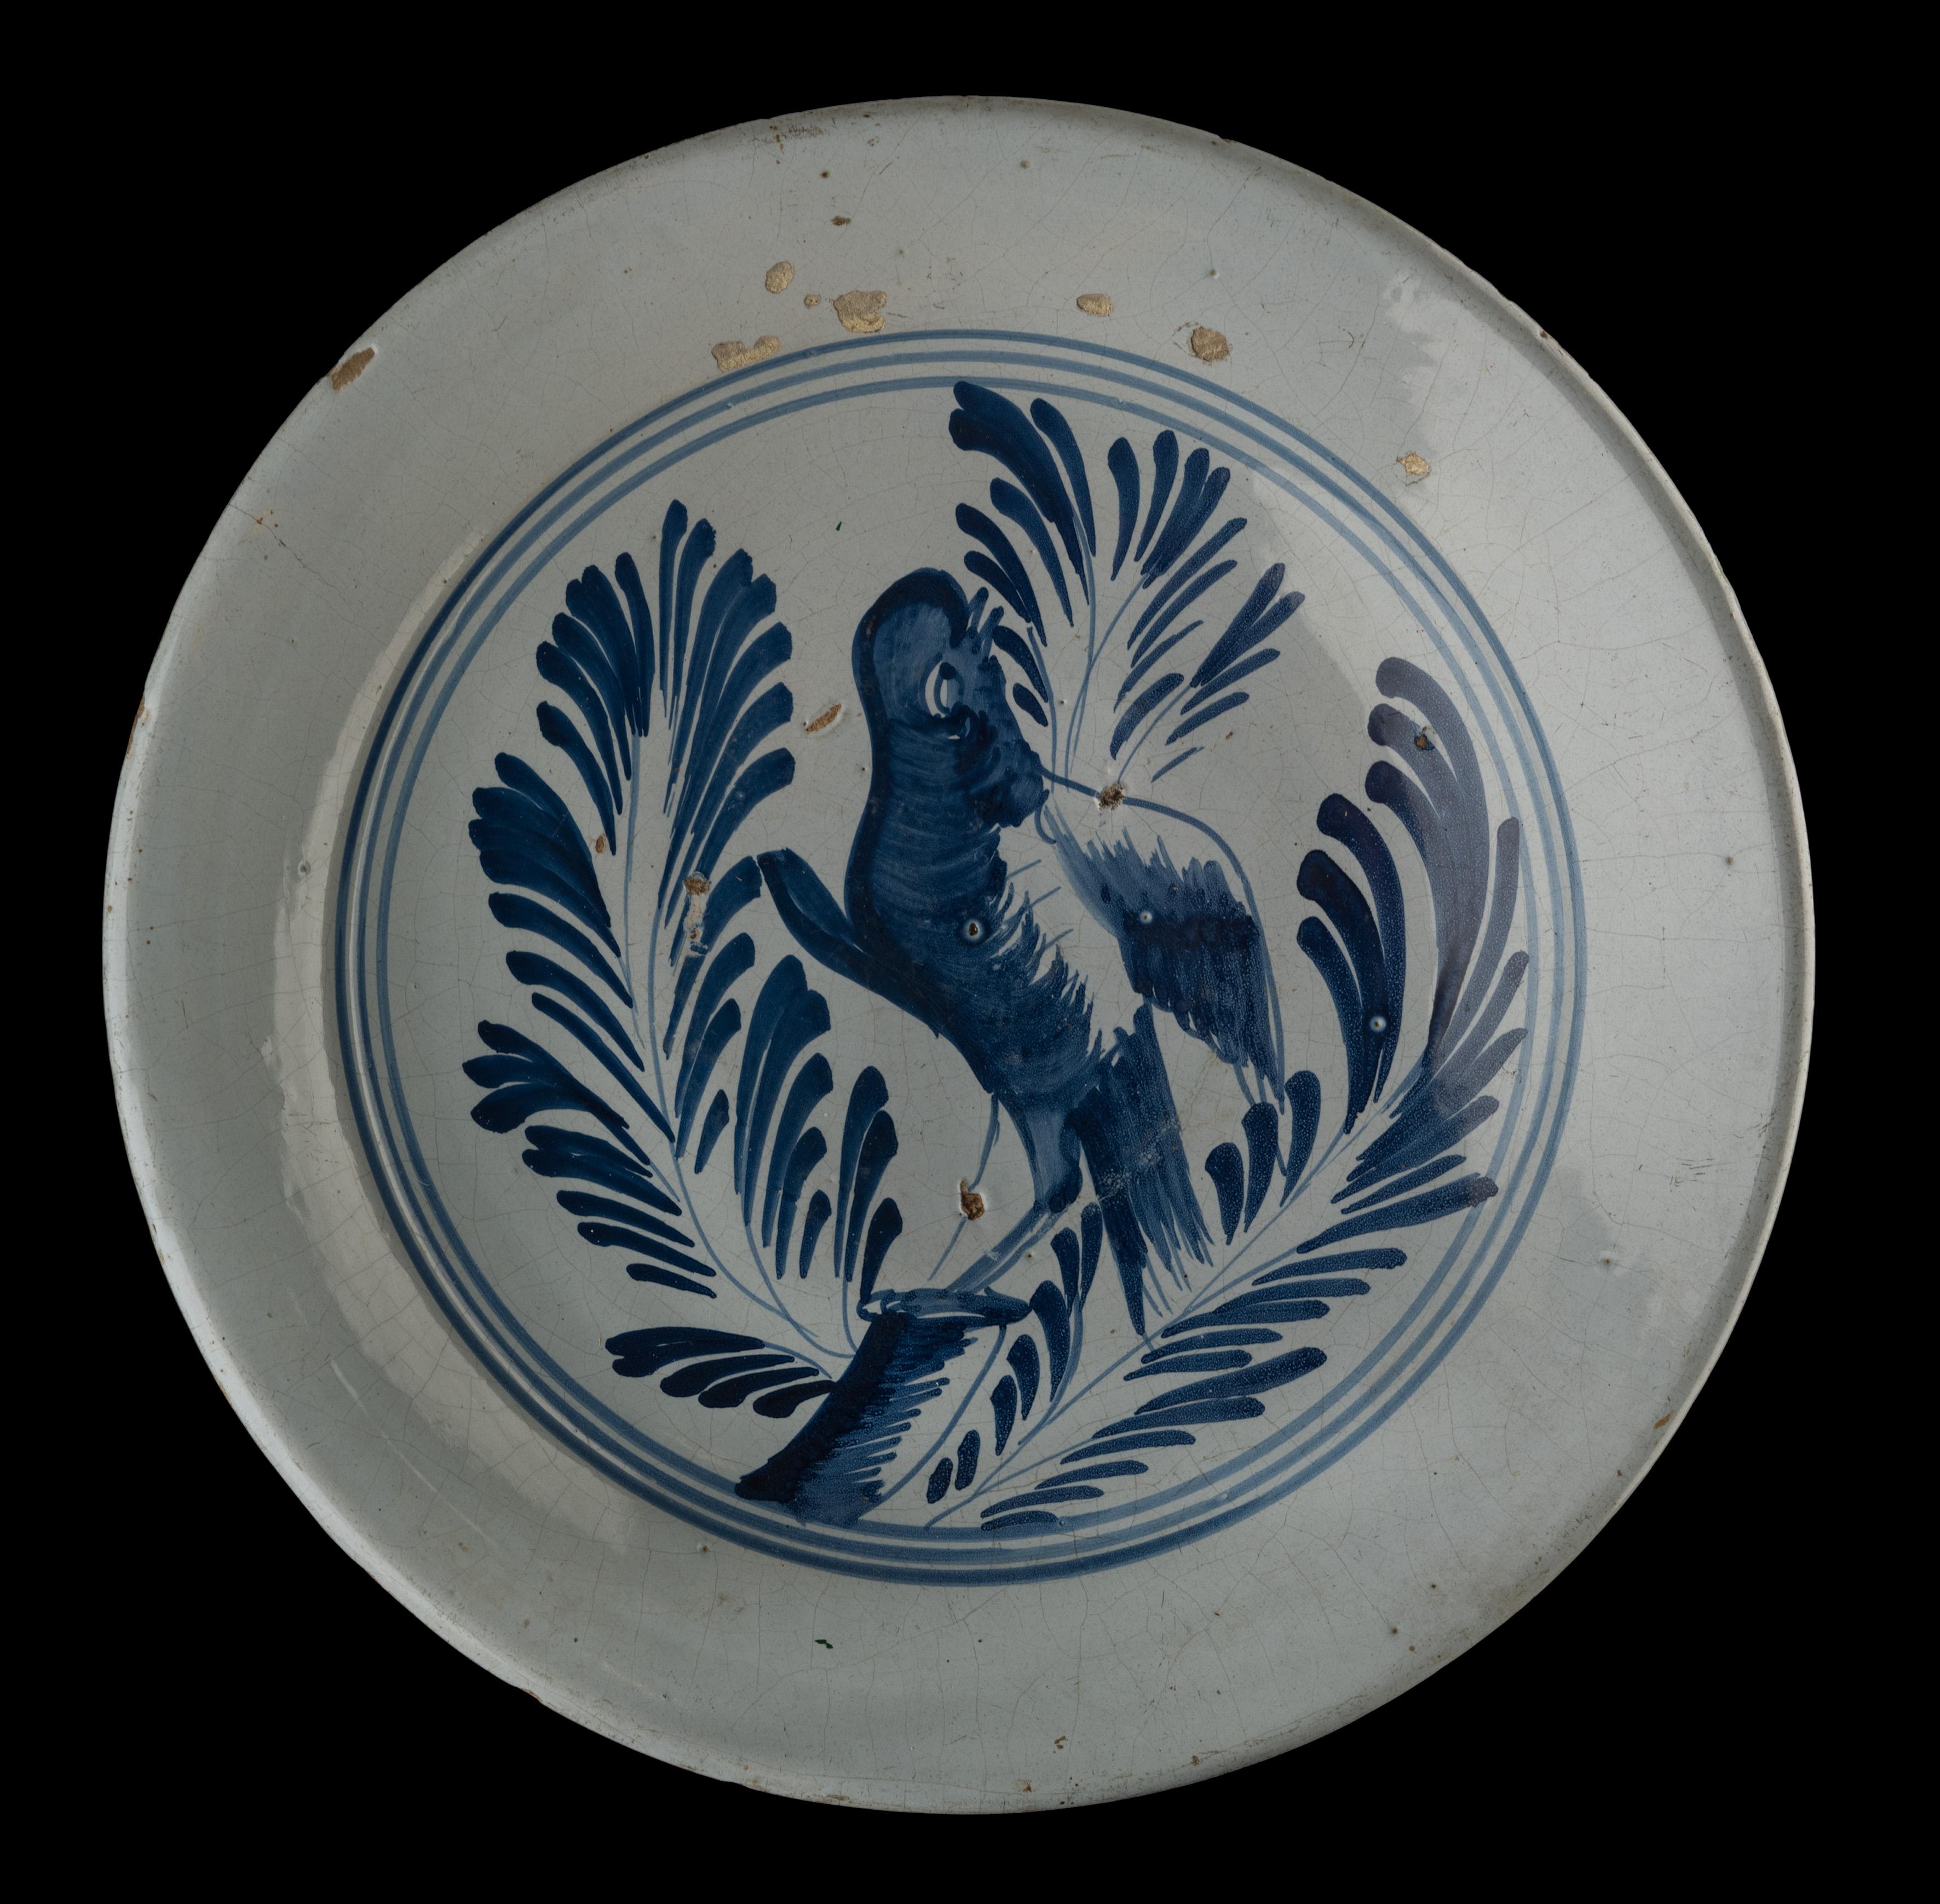 Blaues und weißes Ladegerät mit einem Vogel auf einem Ast. Harlingen, 1775-1800 
Raamstraat Töpferei. Maler: Pieter Ruurds 

Das Ladegerät hat einen leicht erhöhten Flansch und ist blau bemalt mit einem Papagei auf einem verkürzten Zweig, aus dem